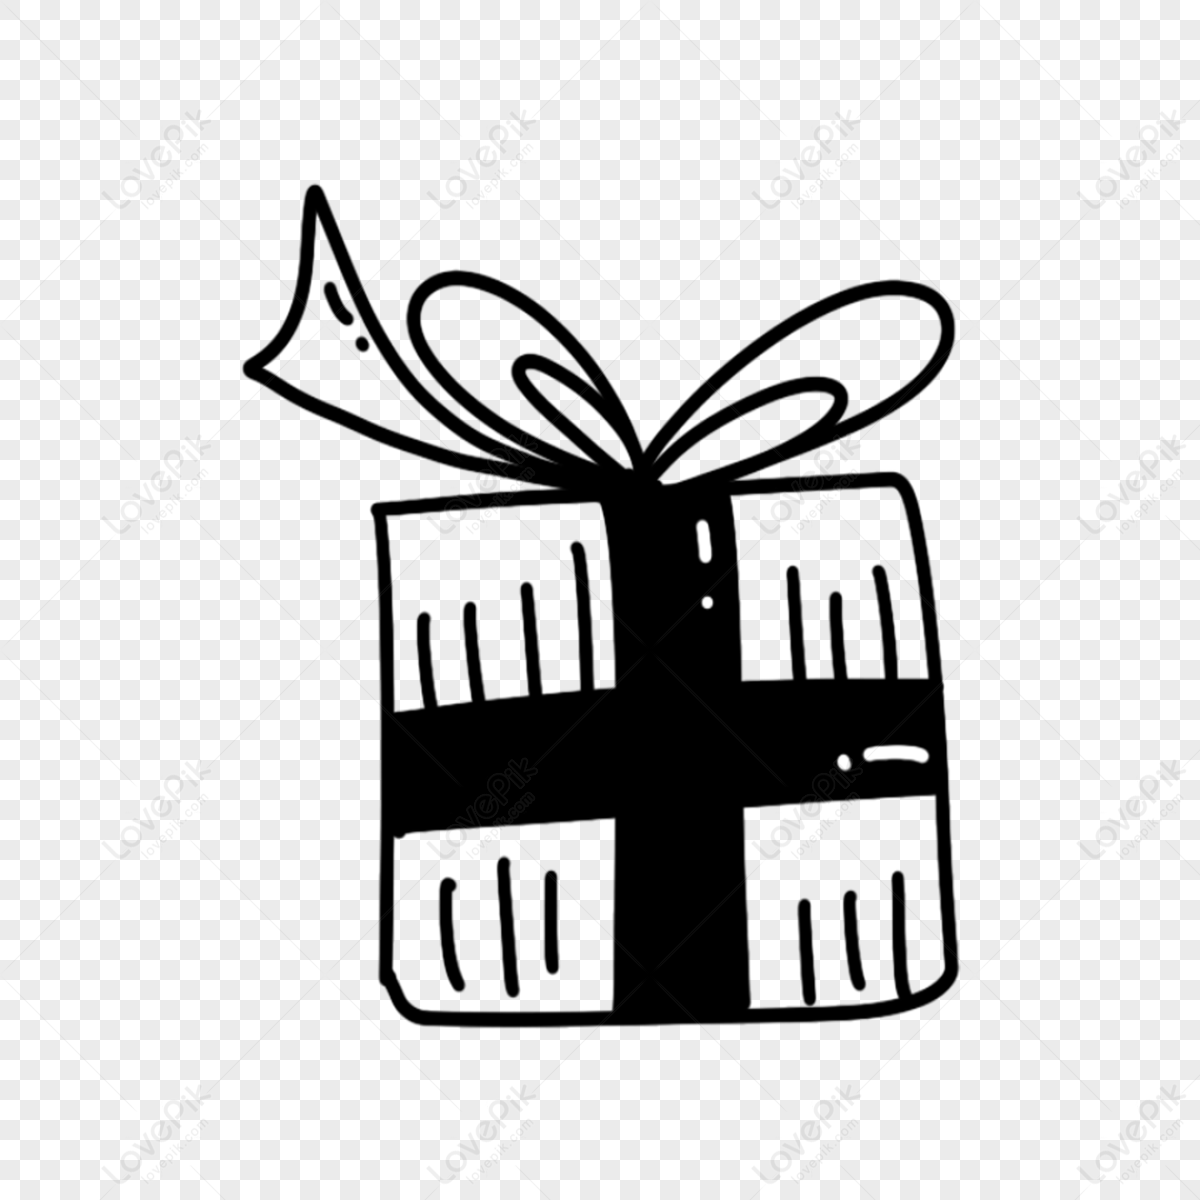 Black White Silhouette Gift Box Stock Illustrations – 3,722 Black White  Silhouette Gift Box Stock Illustrations, Vectors & Clipart - Dreamstime